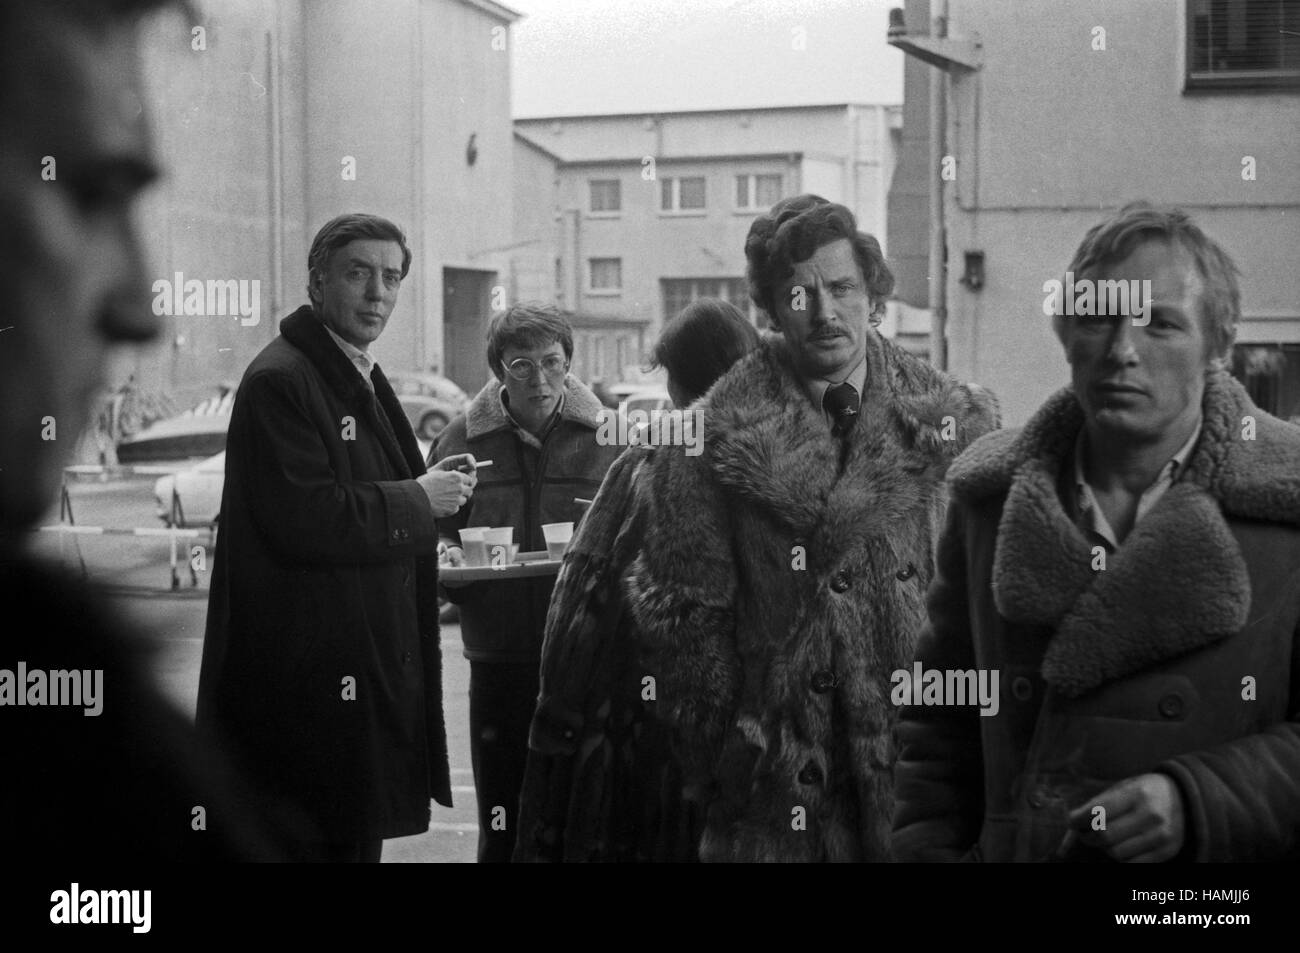 Mittags auf dem Roten Platz, Fernsehfilm, Deutschland 1978, Regisseur Dieter Wedel (Pelzmantel), Darsteller: Claus Theo Gärtner (rechts) Stock Photo